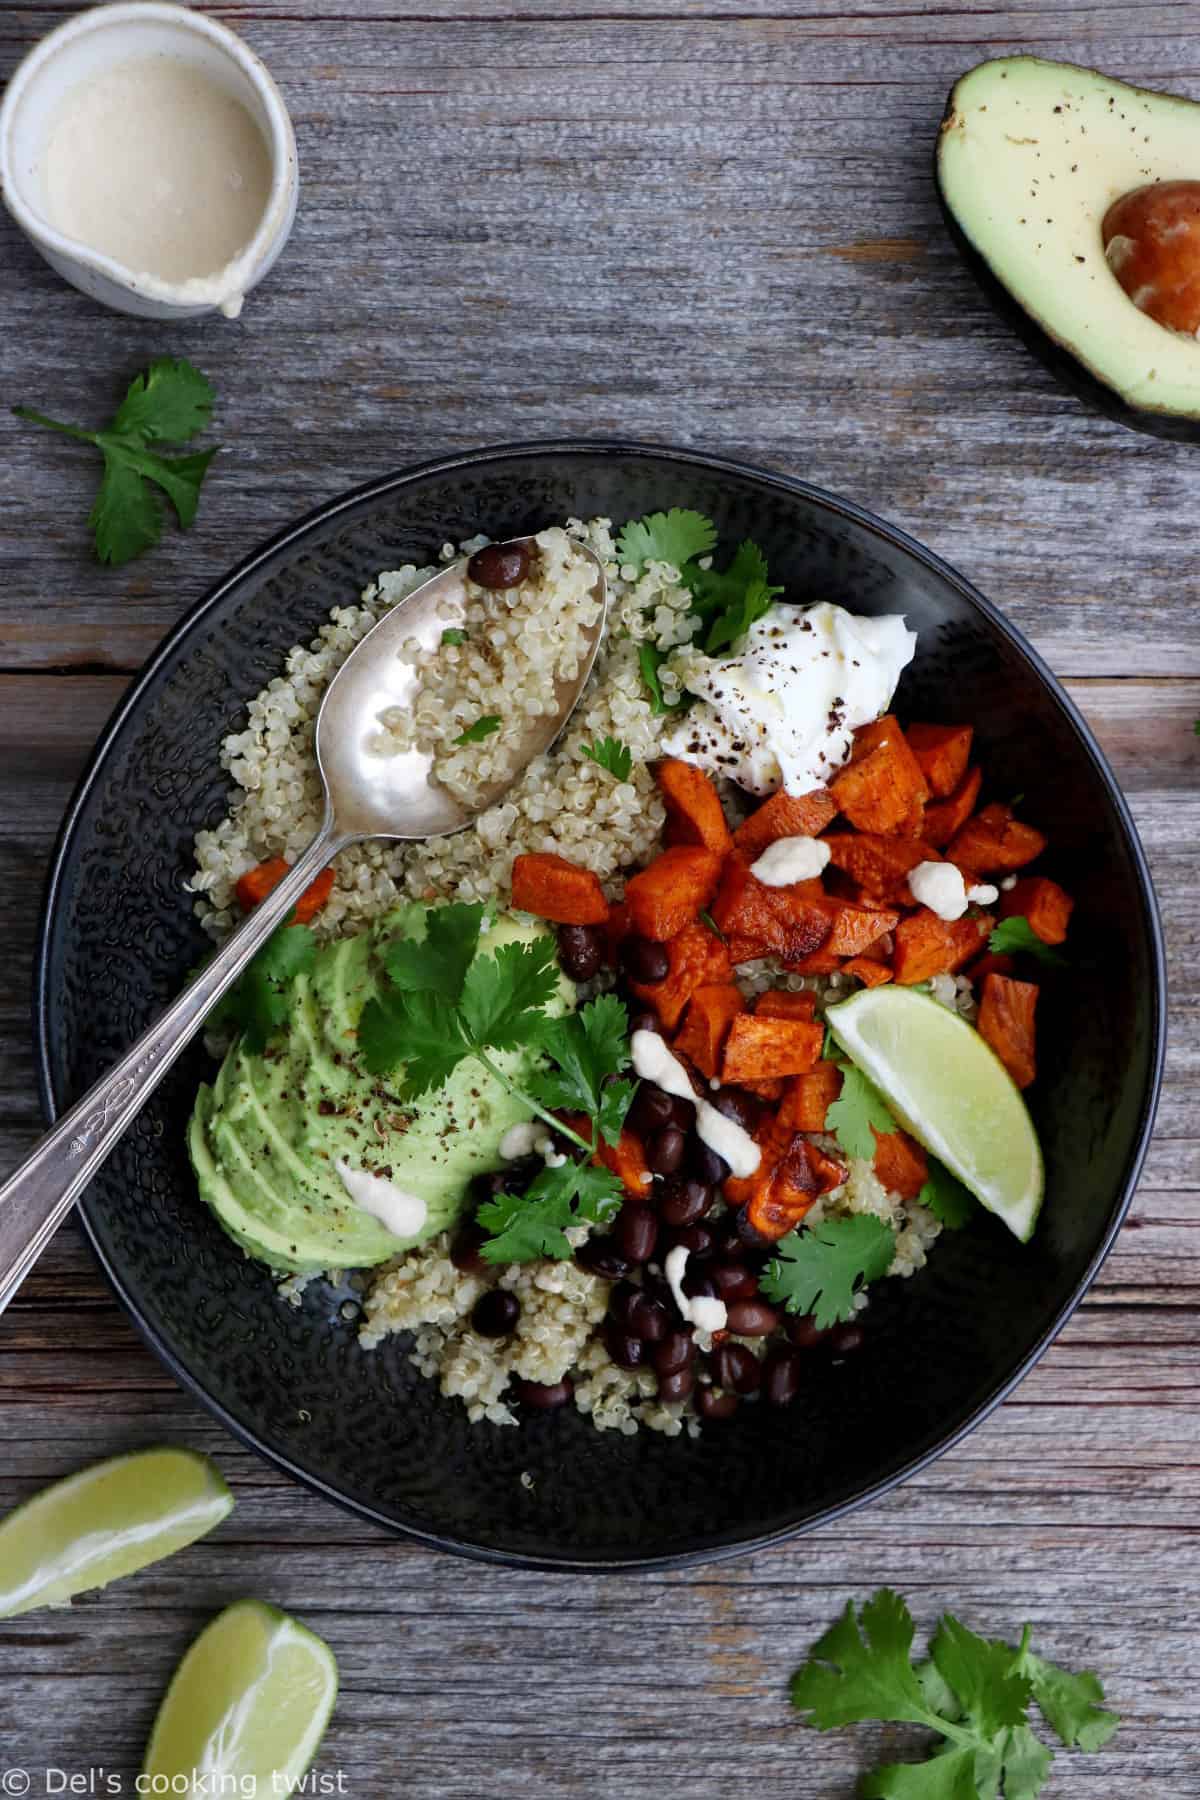 Sain, nourrissant et savoureux, ce quinoa bowl aux patates douces et haricots noirs constitue un plat idéal pour la semaine. Riche en légumes et protéines végétales, il s'accompagne d'un dressing au tahini des plus irrésistibles.